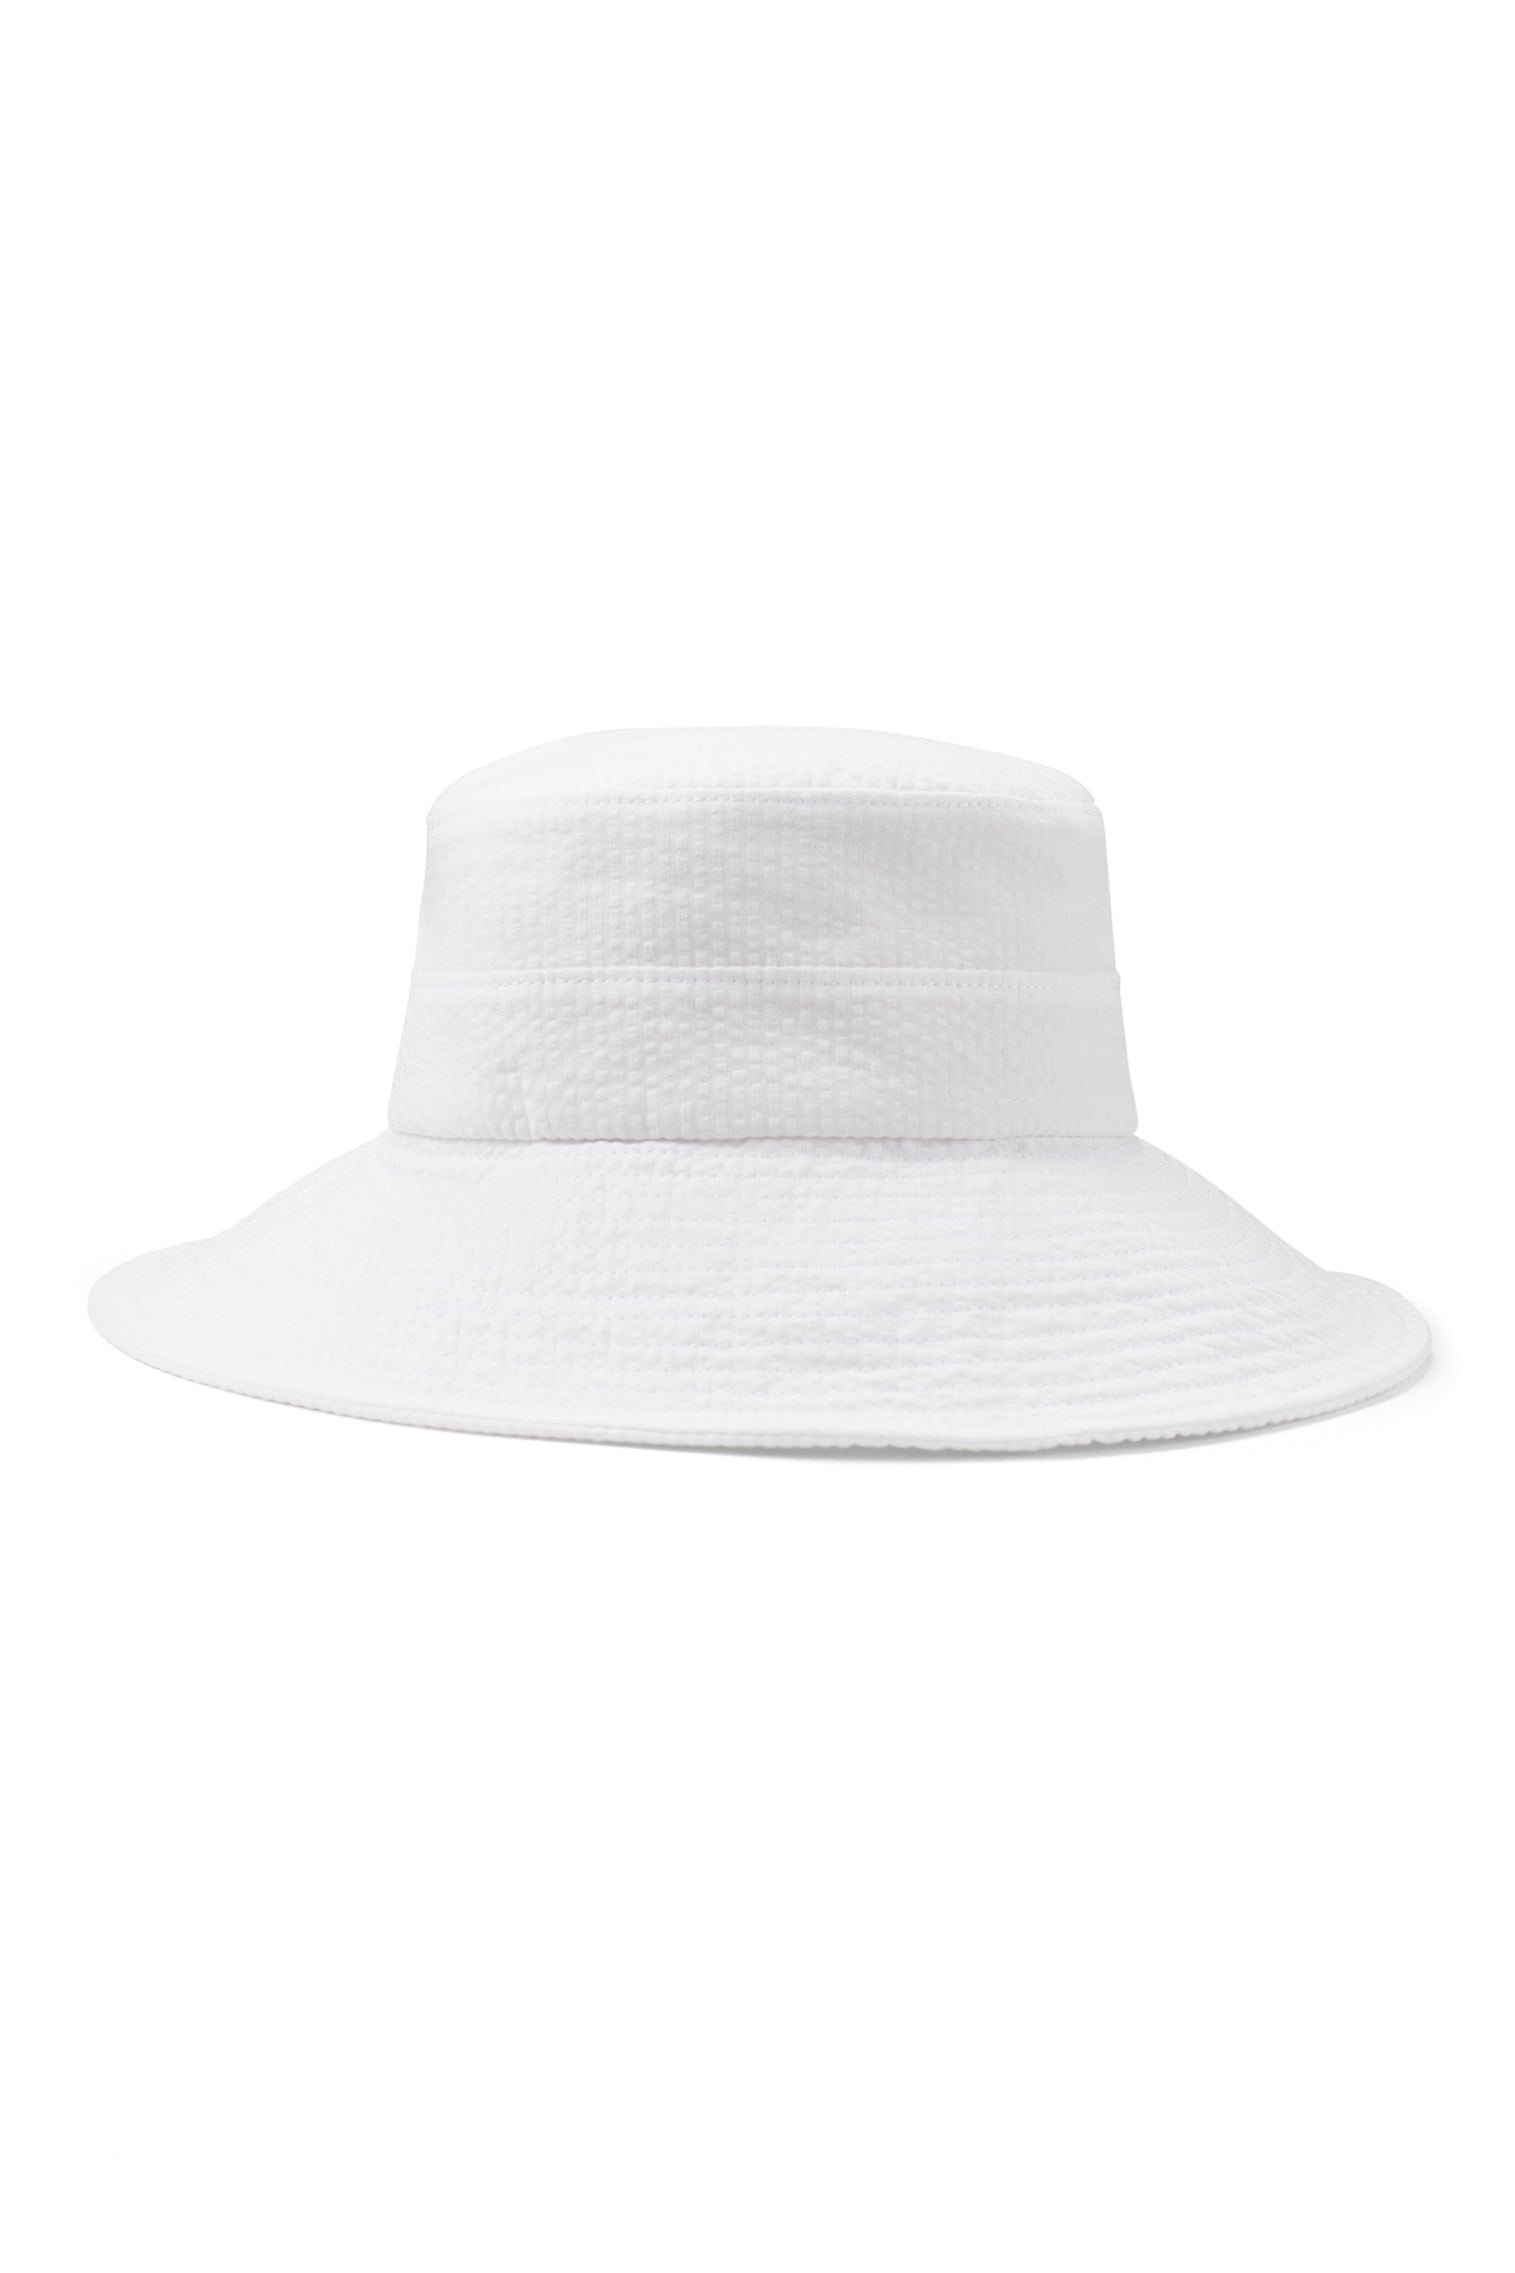 Margot Seersucker Sun Hat - Panamas, Straw and Sun Hats for Women - Lock & Co. Hatters London UK